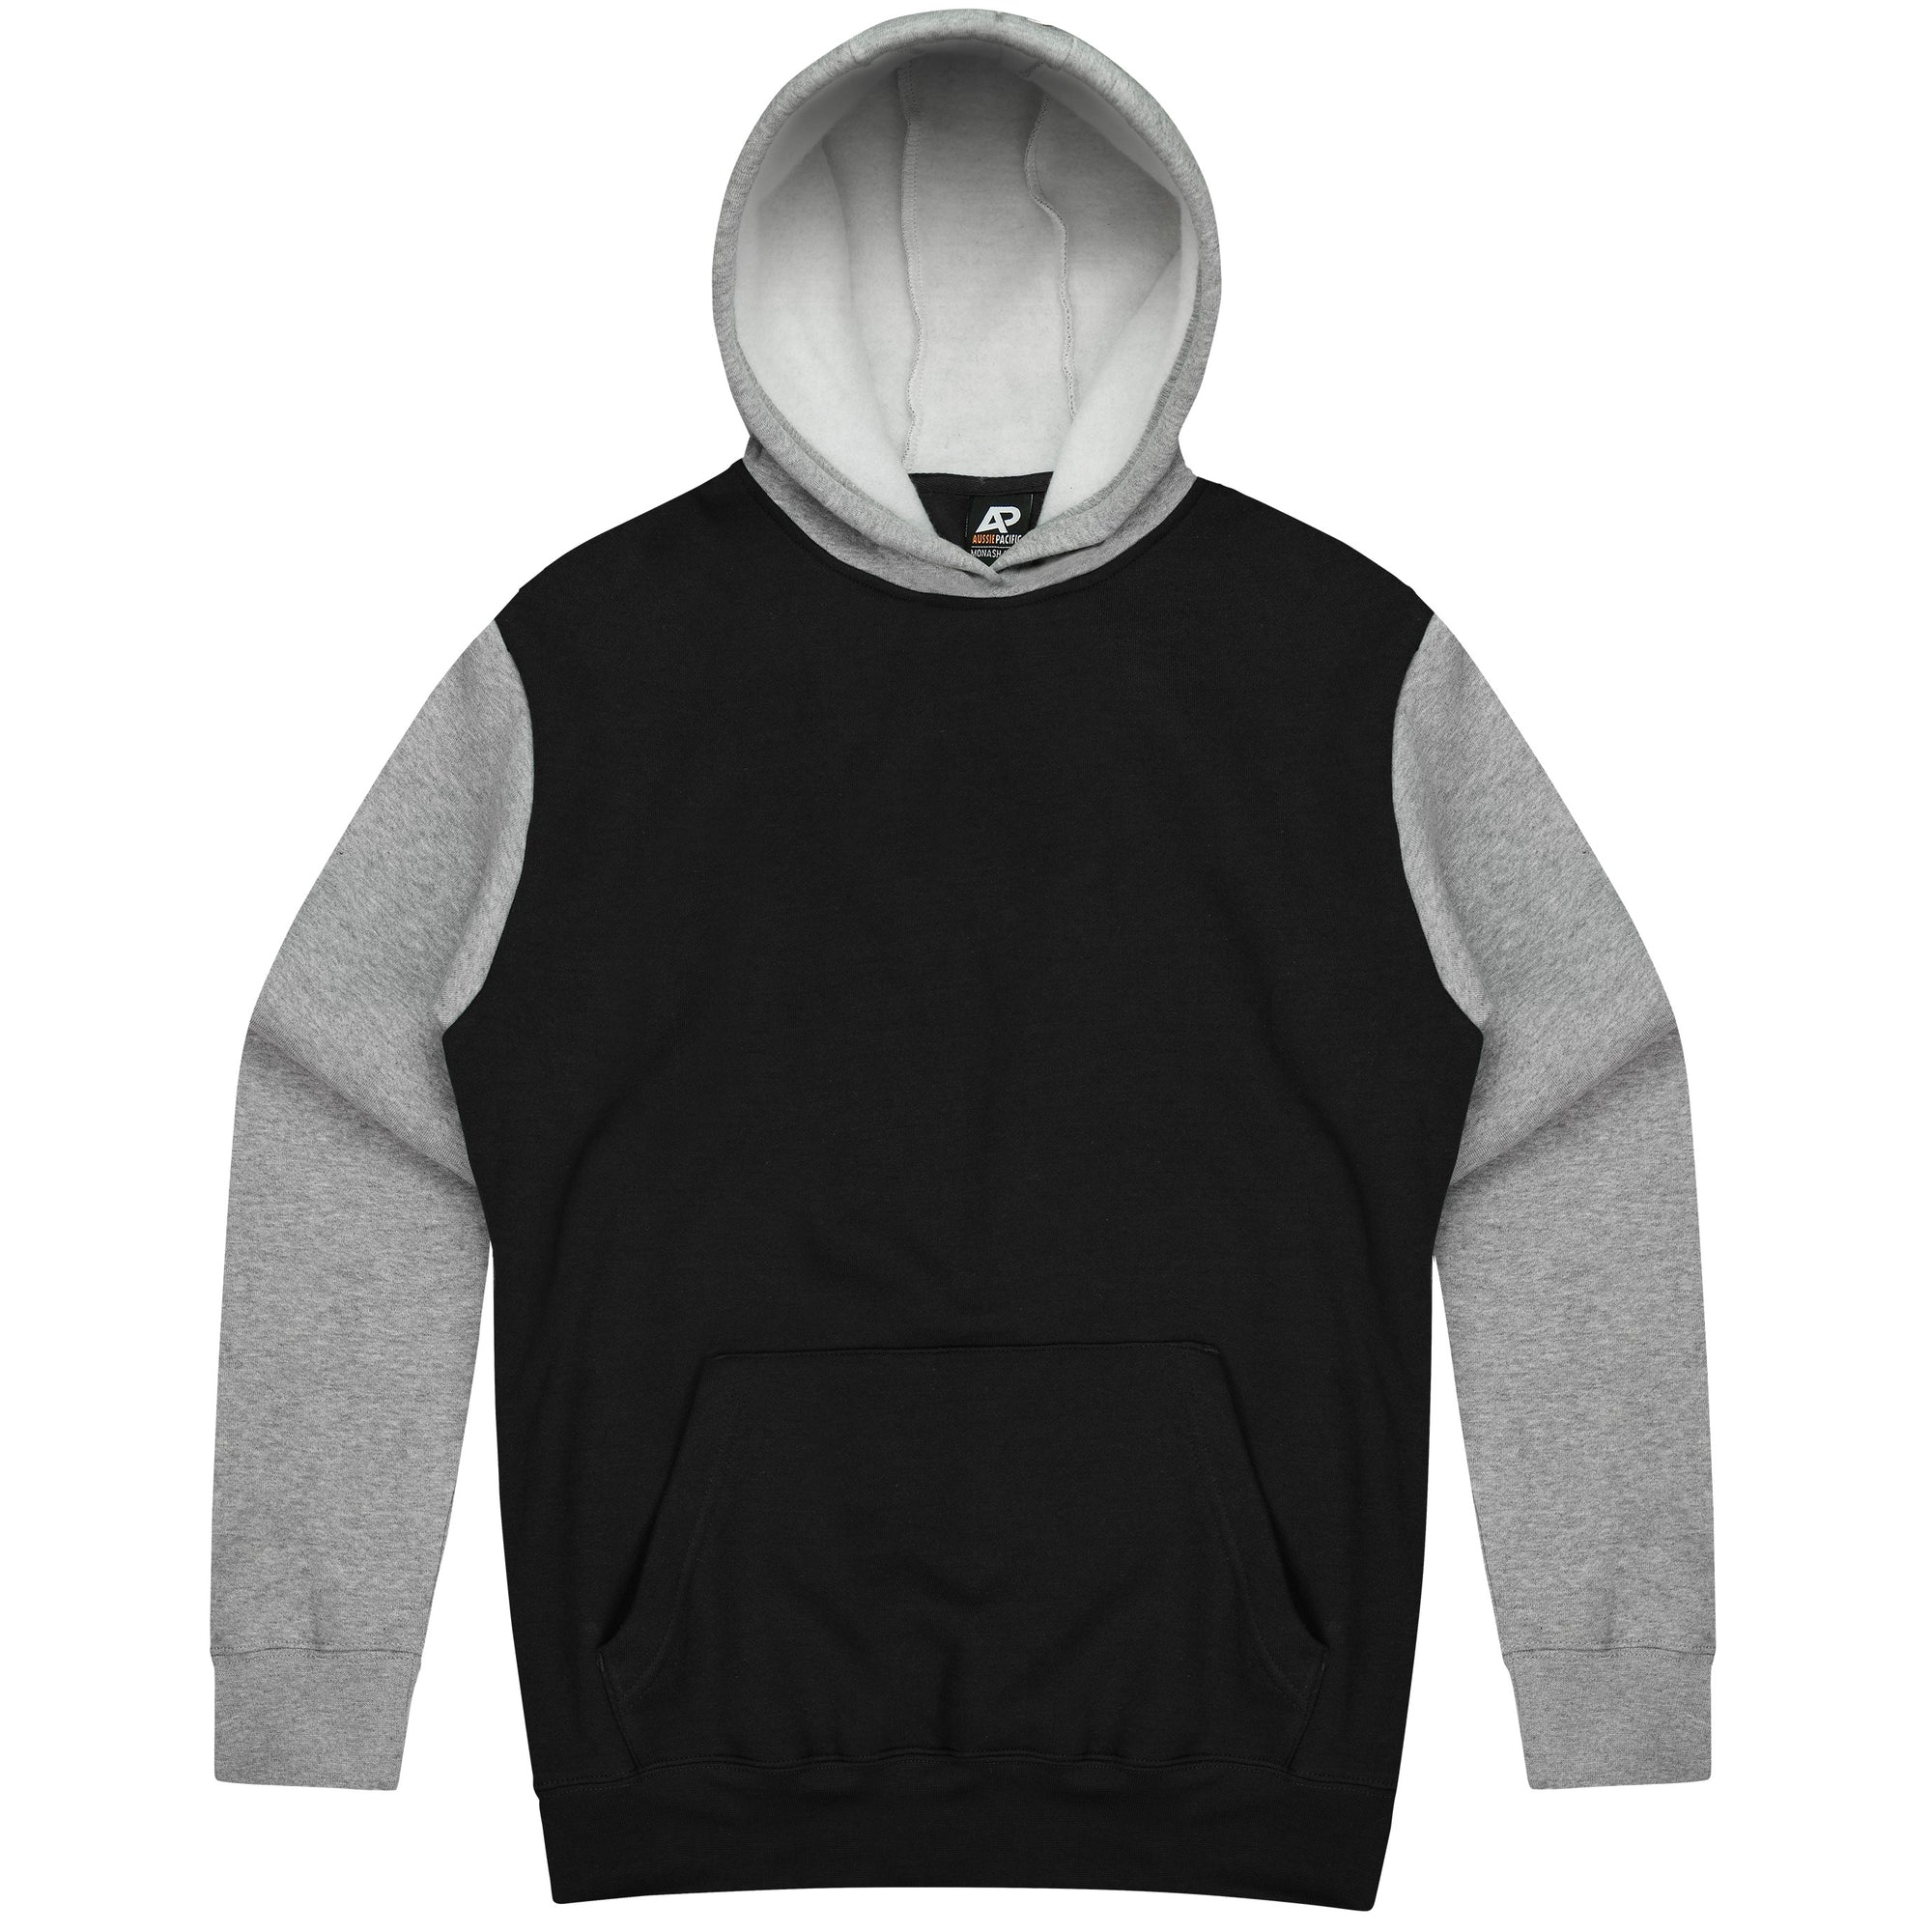 Custom Printed Monash Hoodies - Black/Grey